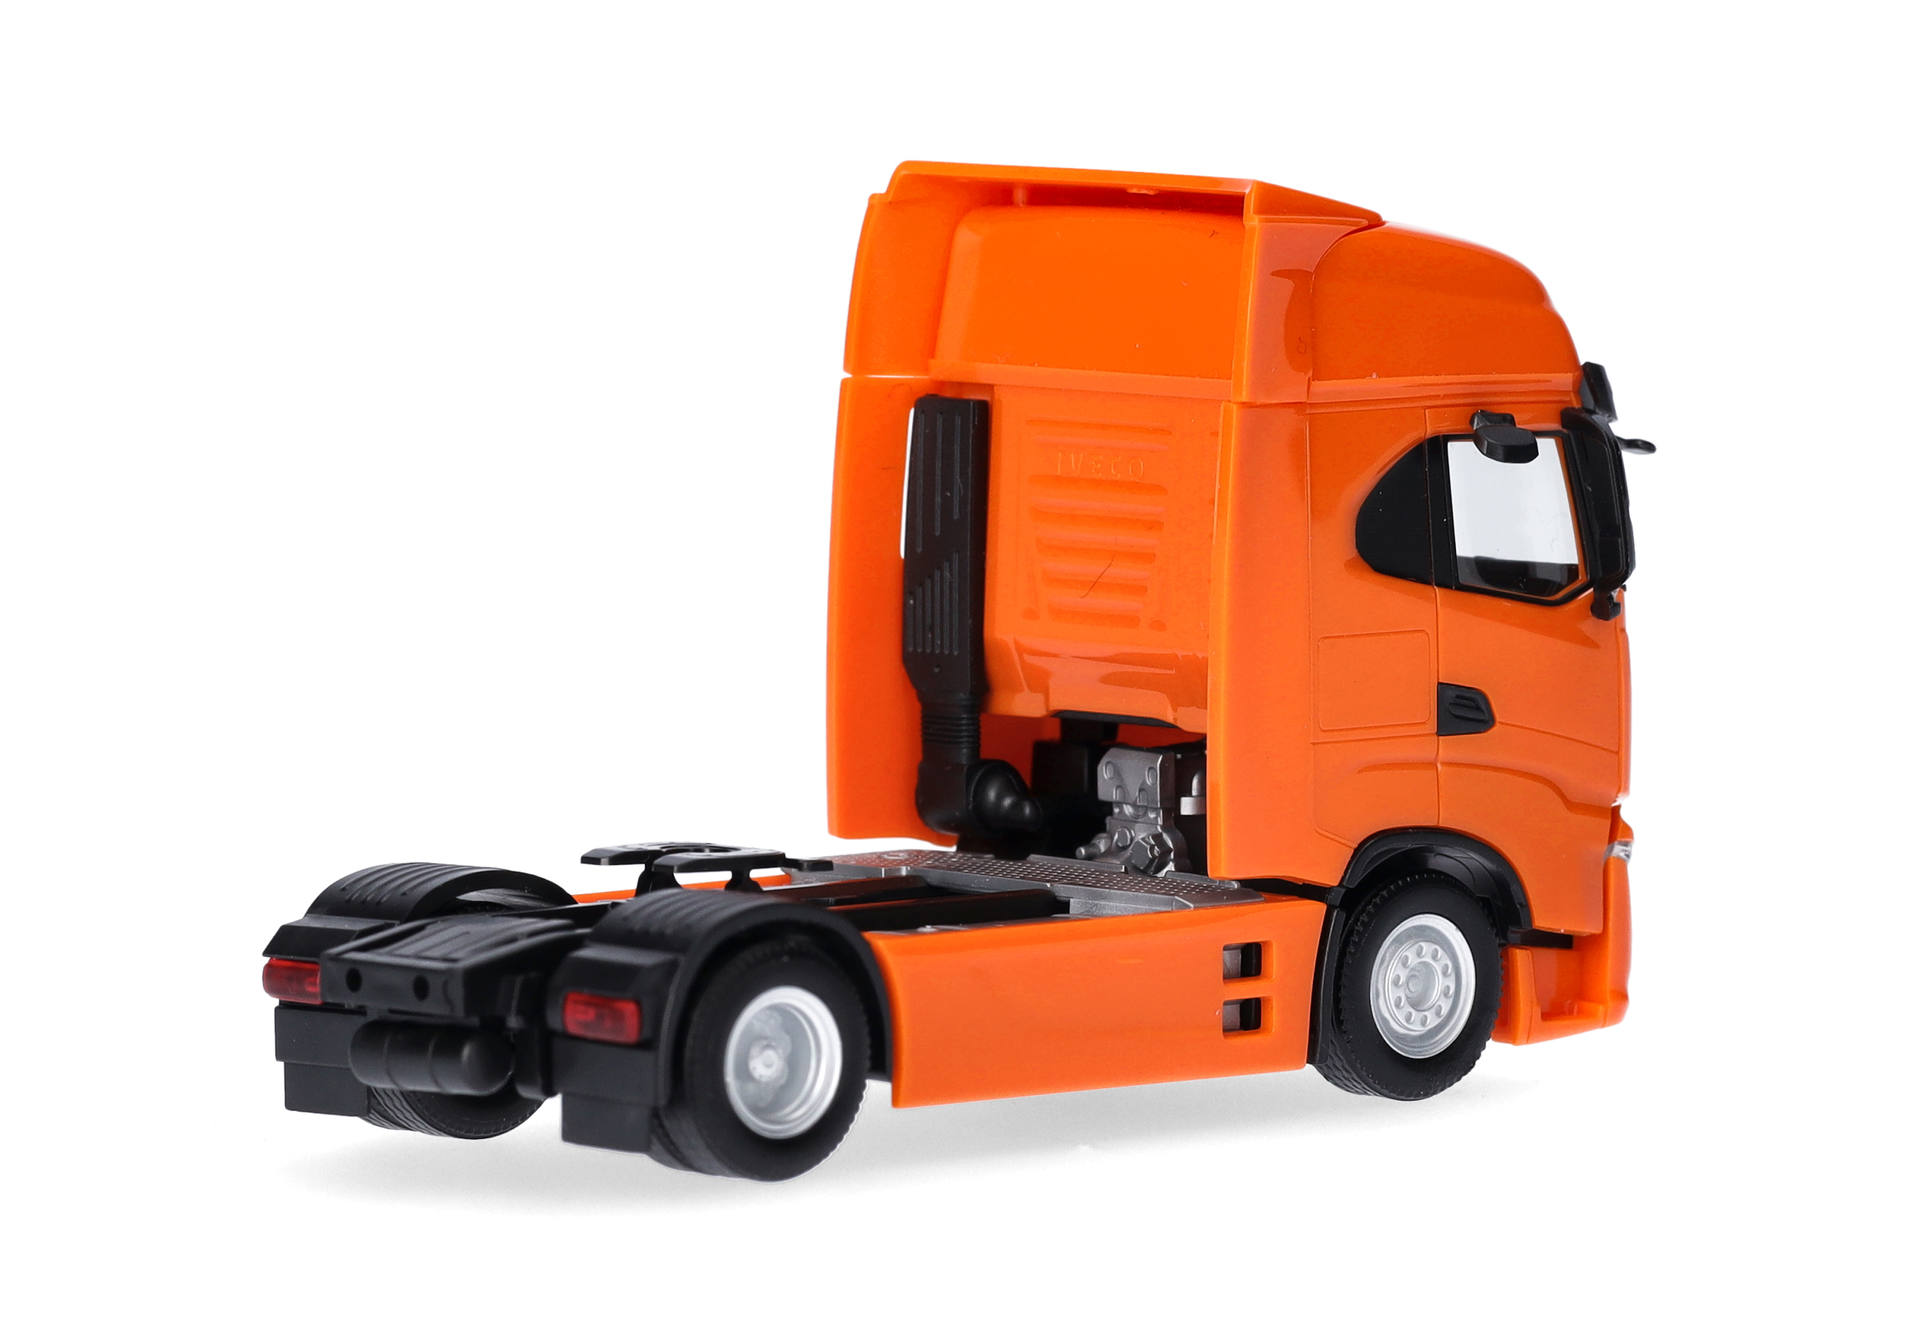 Iveco S-Way rigid tractor 2axles, deep orange